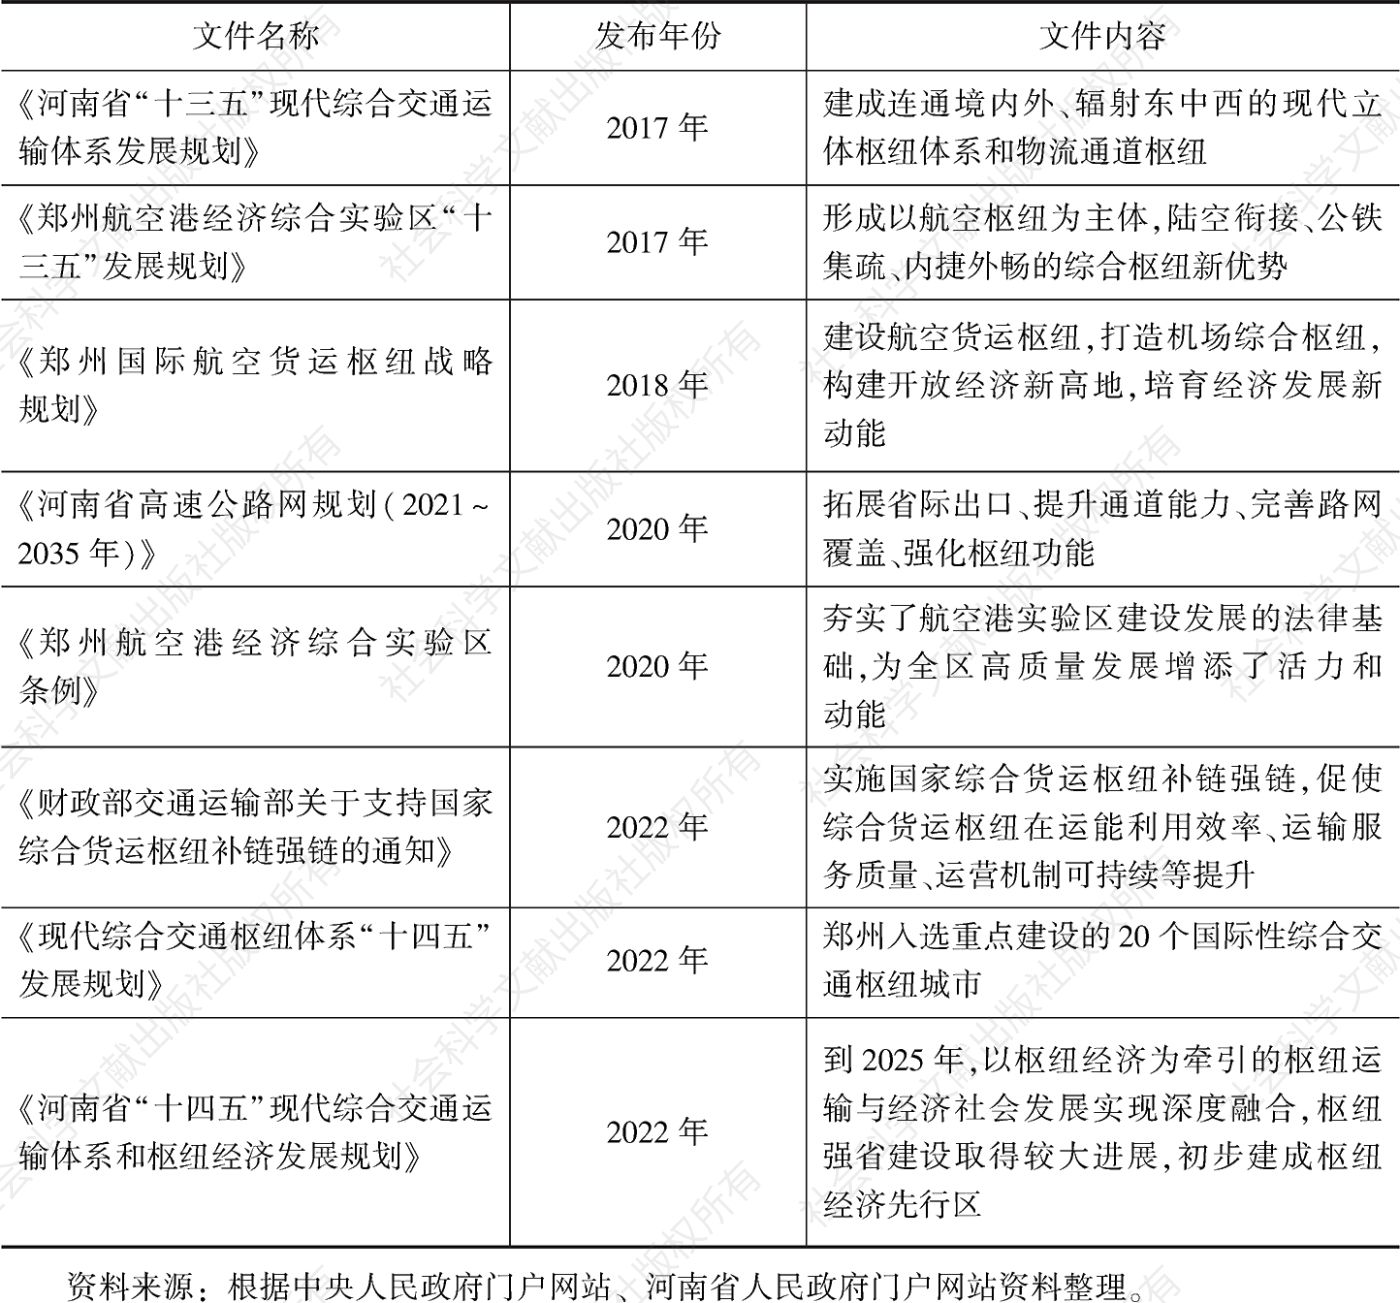 表1 政府促进郑州枢纽能级提升的若干文件